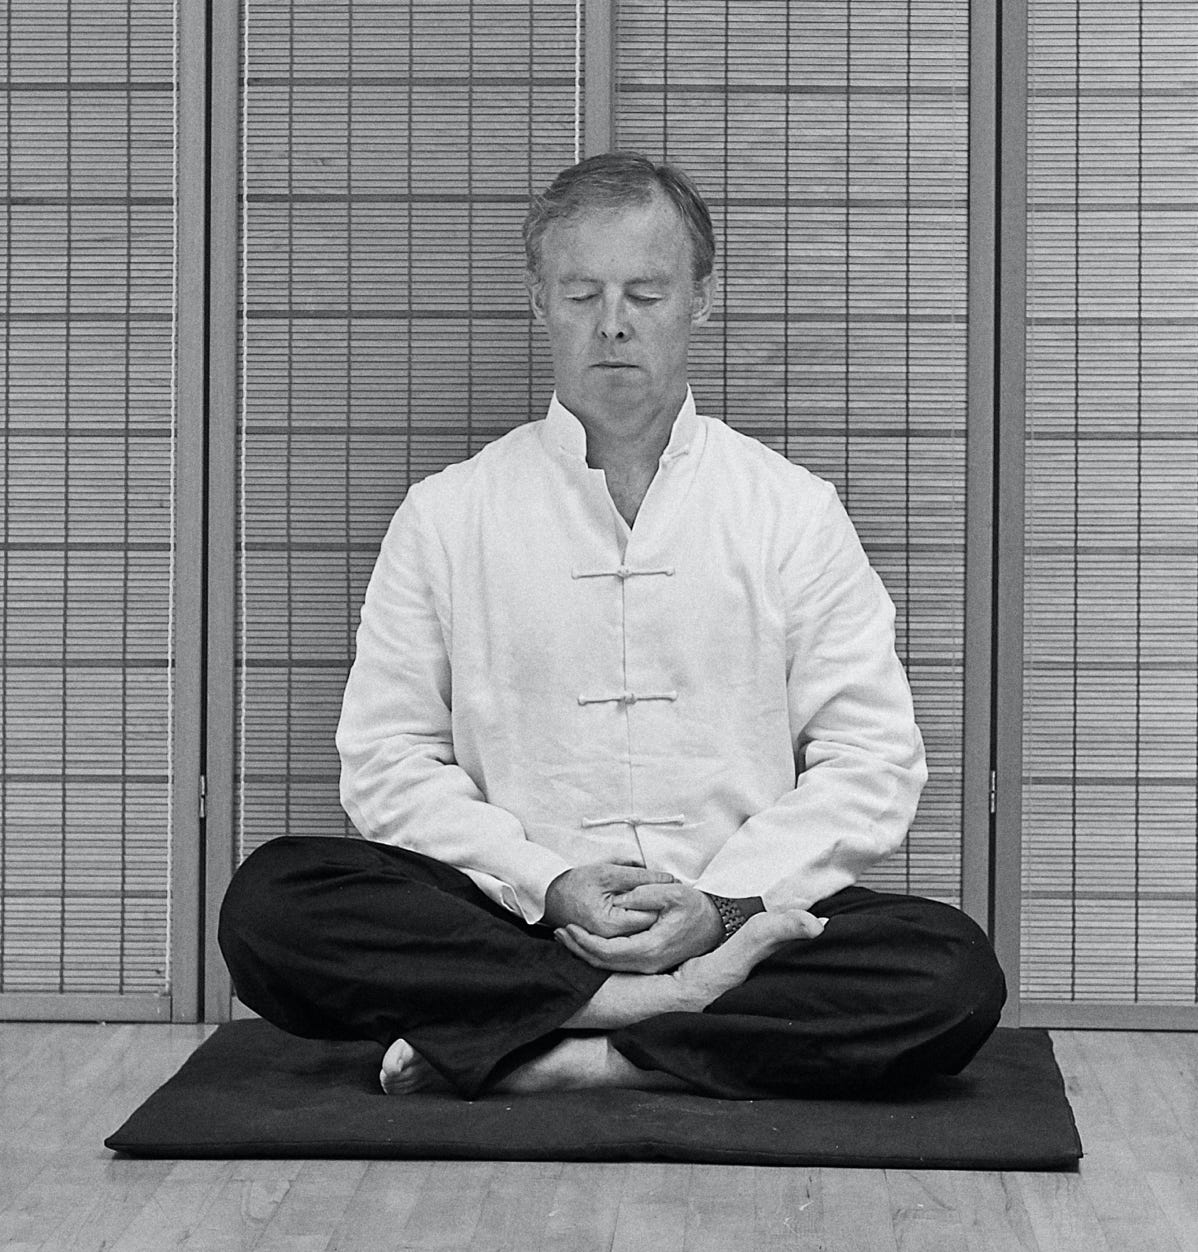 Stephen Forde sitting in a meditation posture